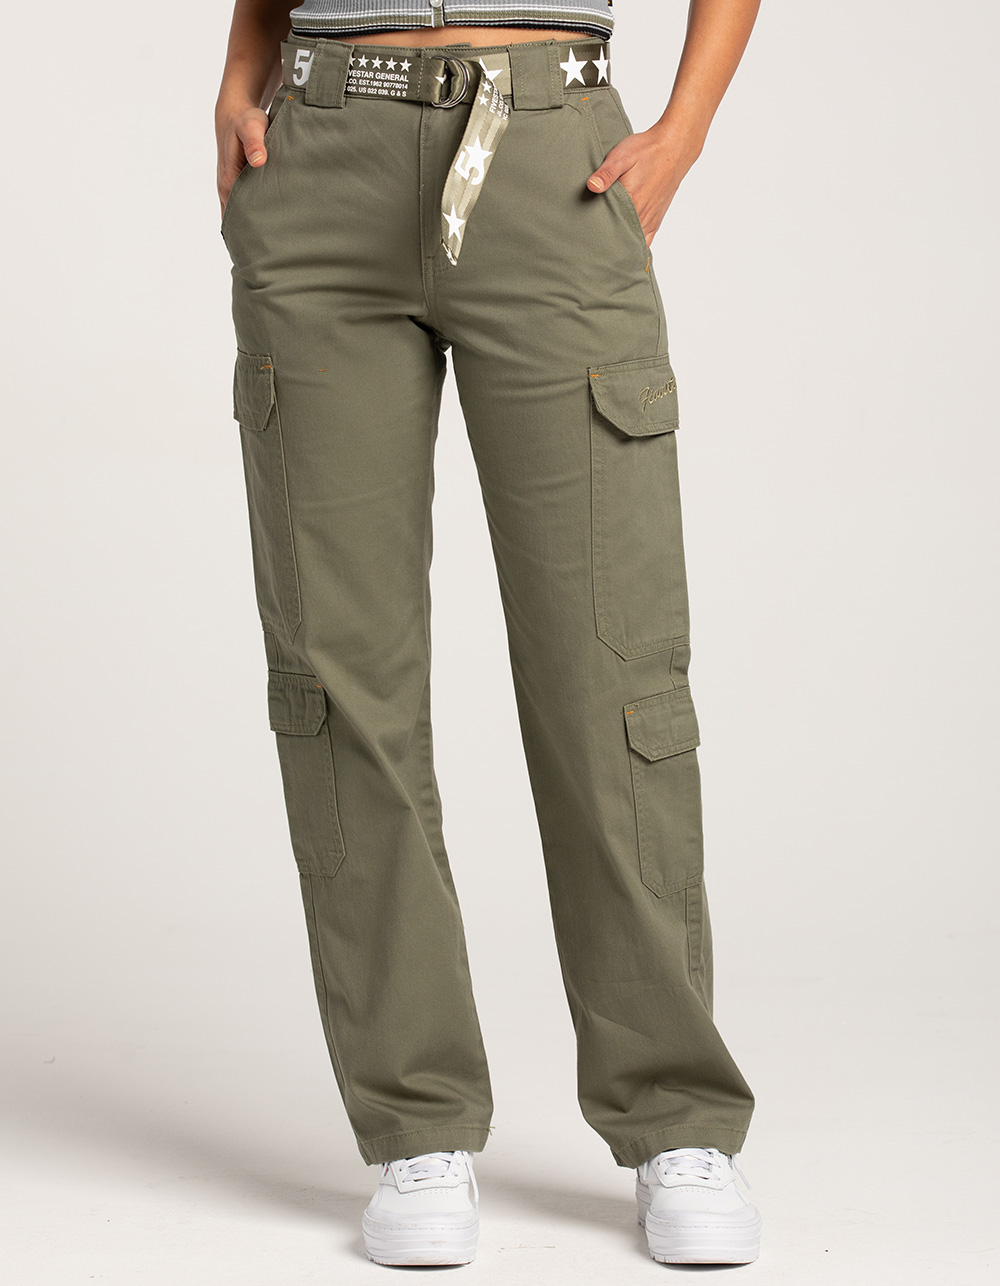 Women Cargo Pants With Belt